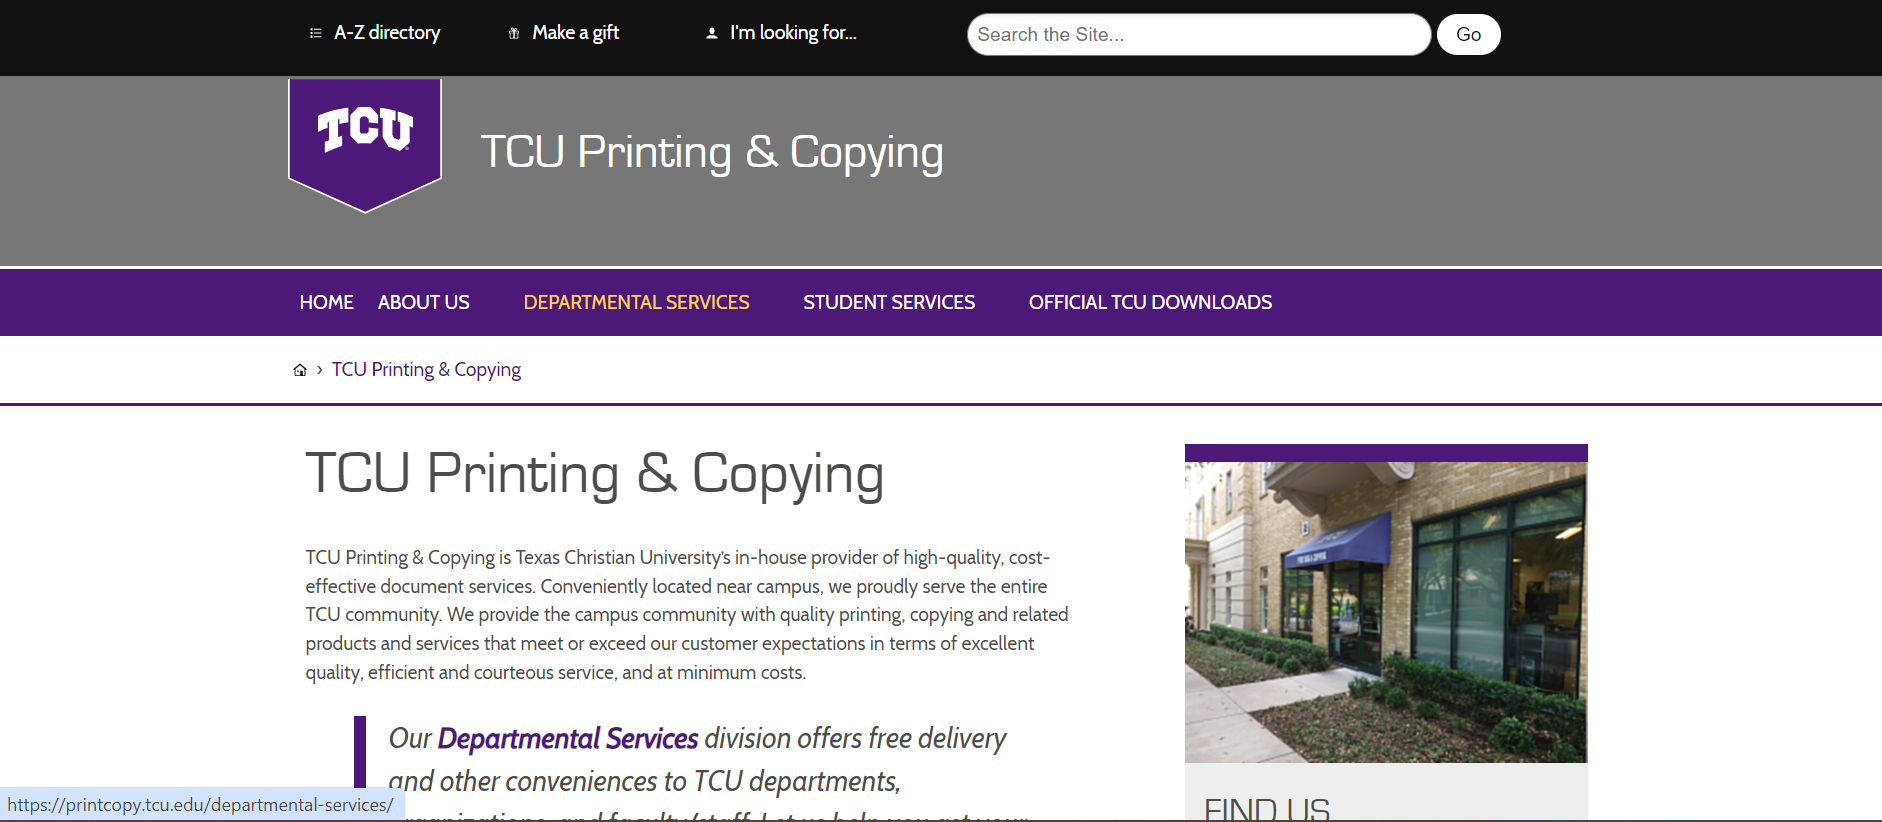 TCU Printing & Copying